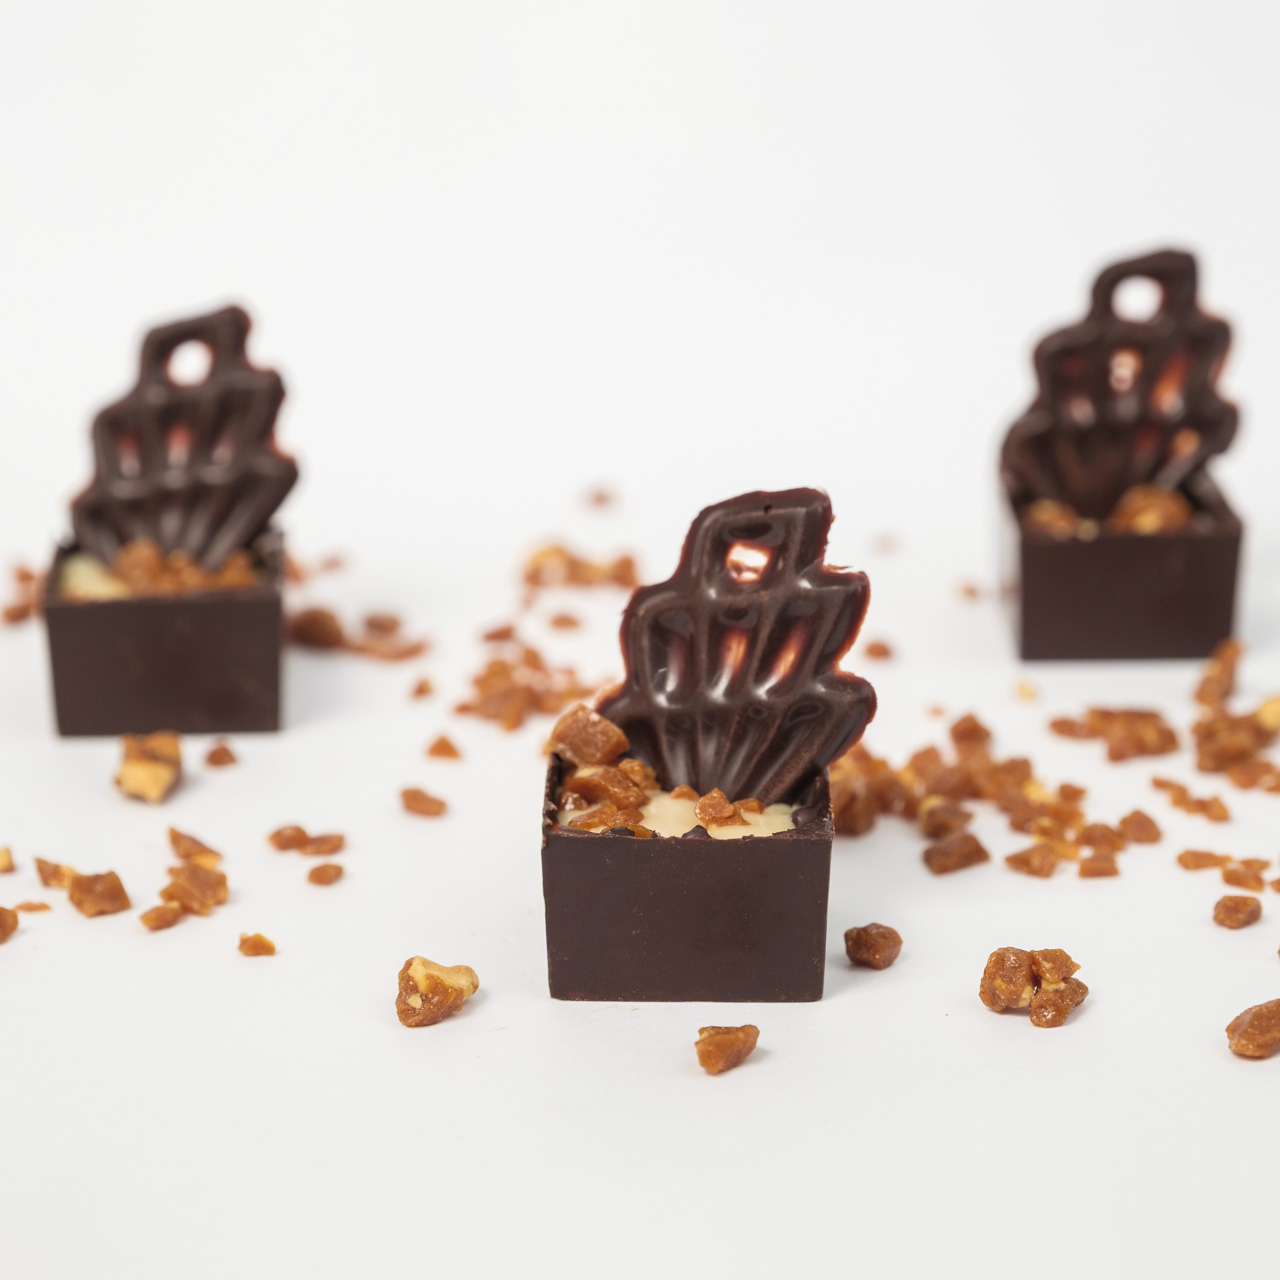 Vegano Quadrado Crocante - Ana Foster Chocolates